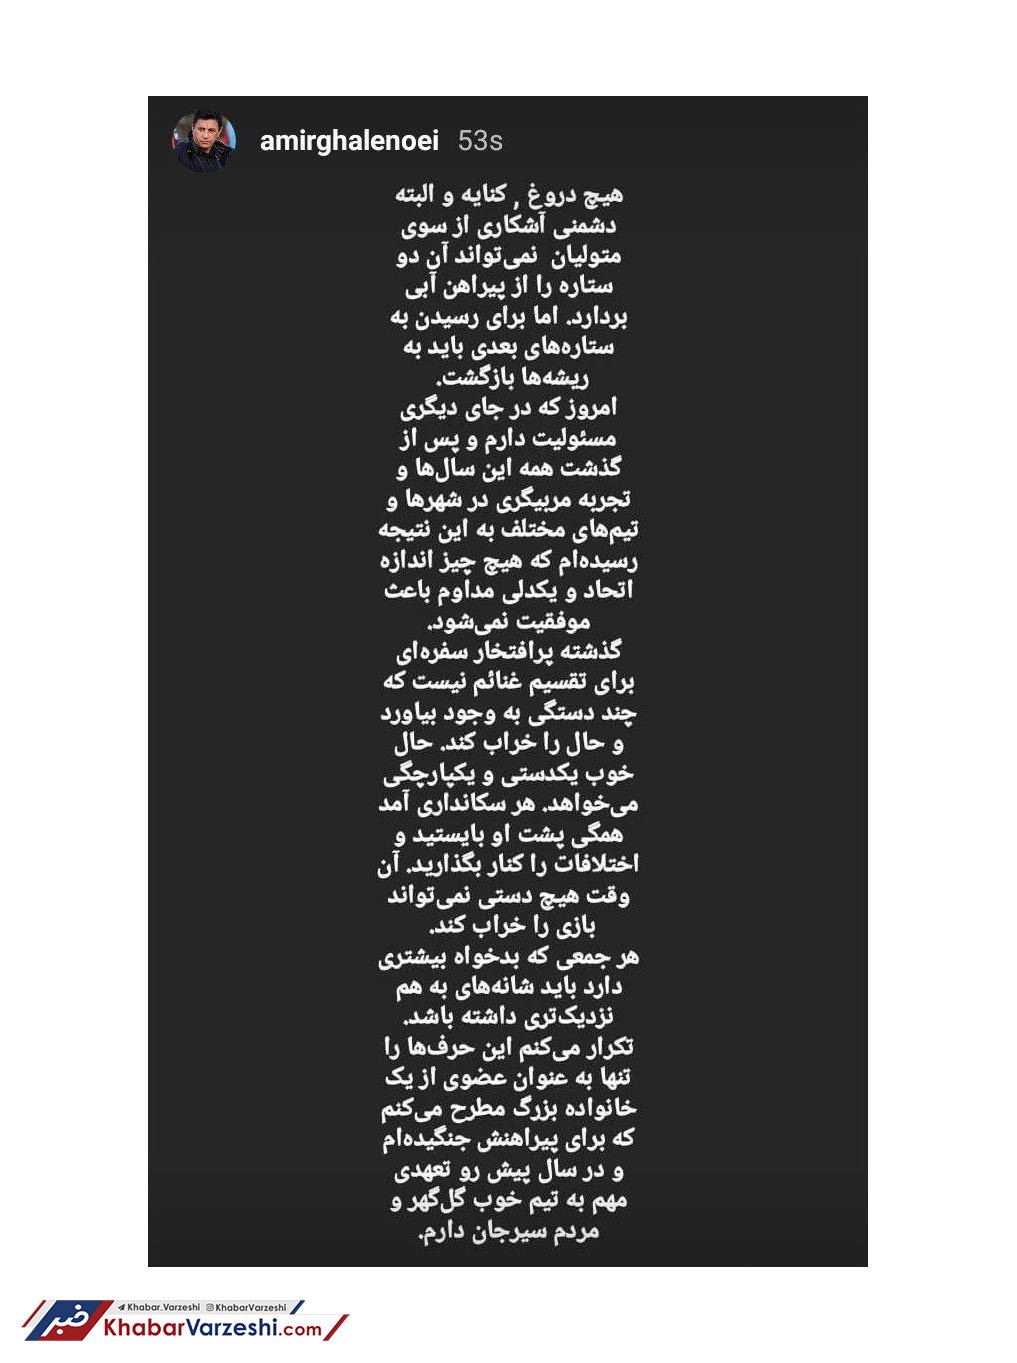 پیام اینستاگرامی جدید قلعه نویی به استقلالی ها